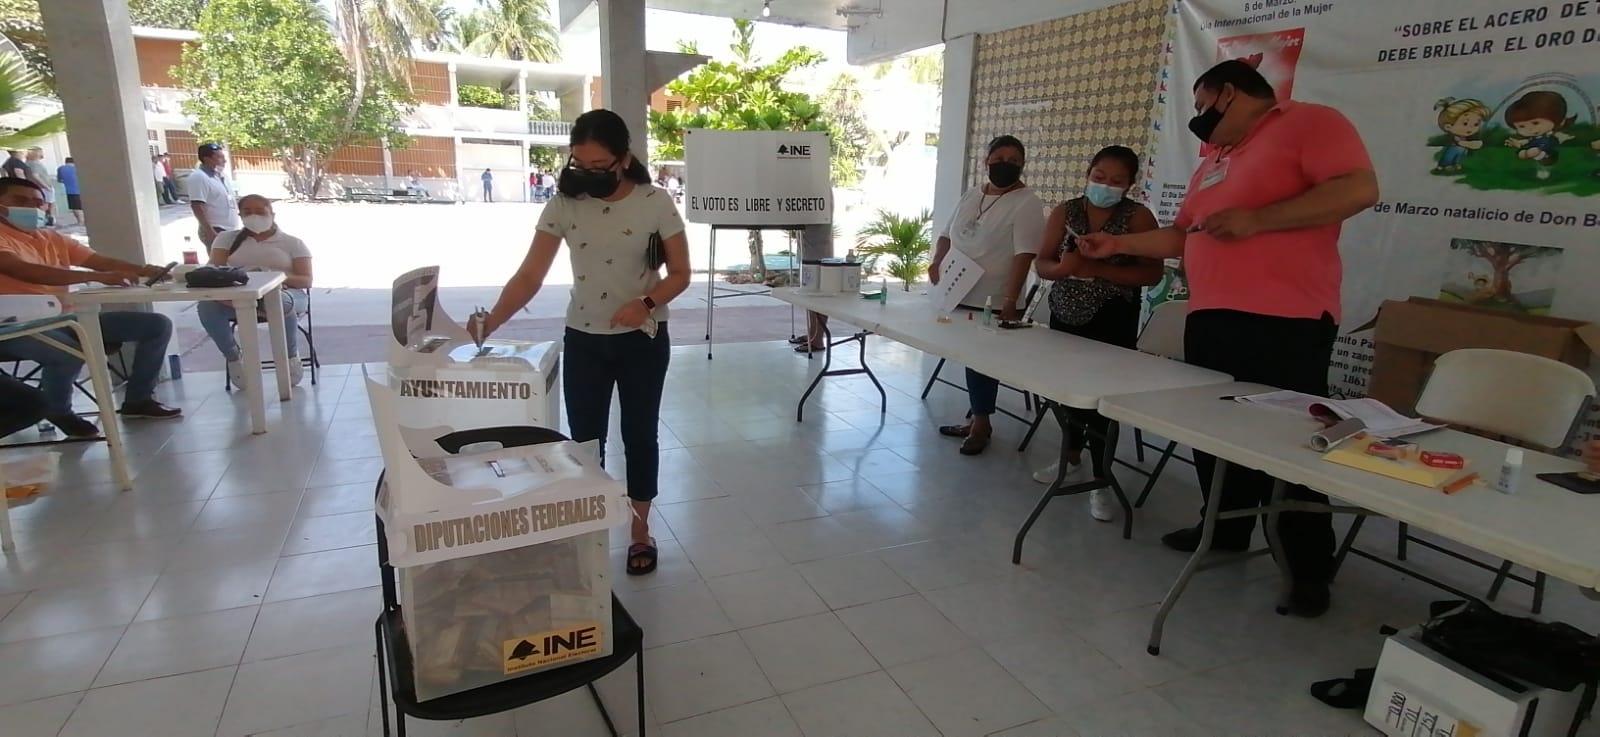 Seleccionados para Consejos Distritales en Quintana Roo se niegan a participar